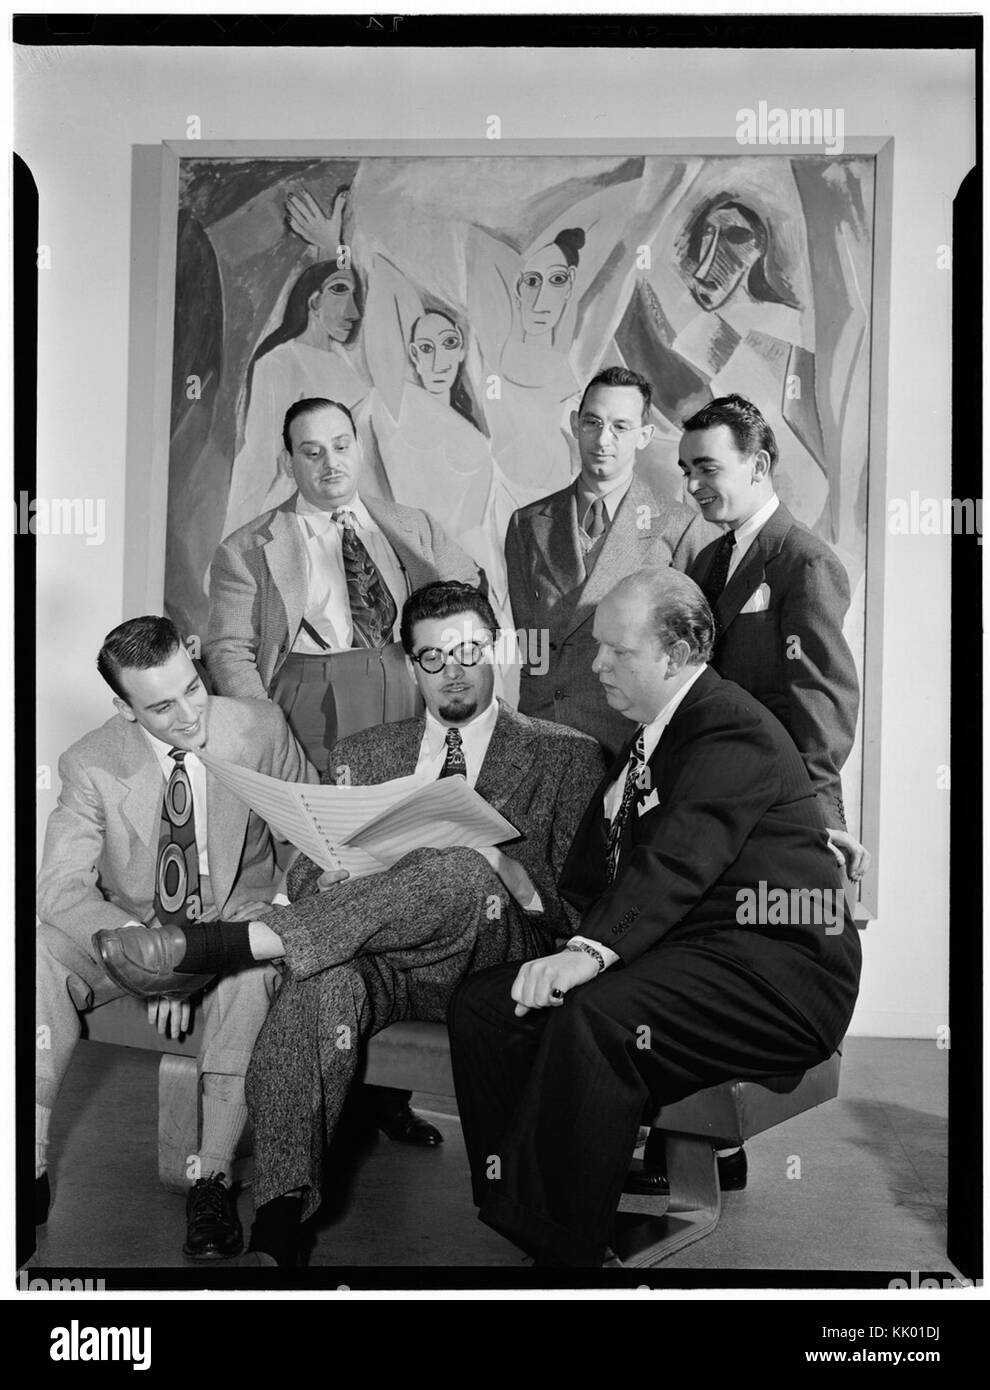 (Retrato de Johnny Richards, Eddie Sauter, Ralph Burns, Neal Hefti, George Handy, y Edwin A. Finckel, Museo de Arte Moderno de Nueva York, N.Y., ca. Marzo 1947) (LOC) (5189935770) Foto de stock